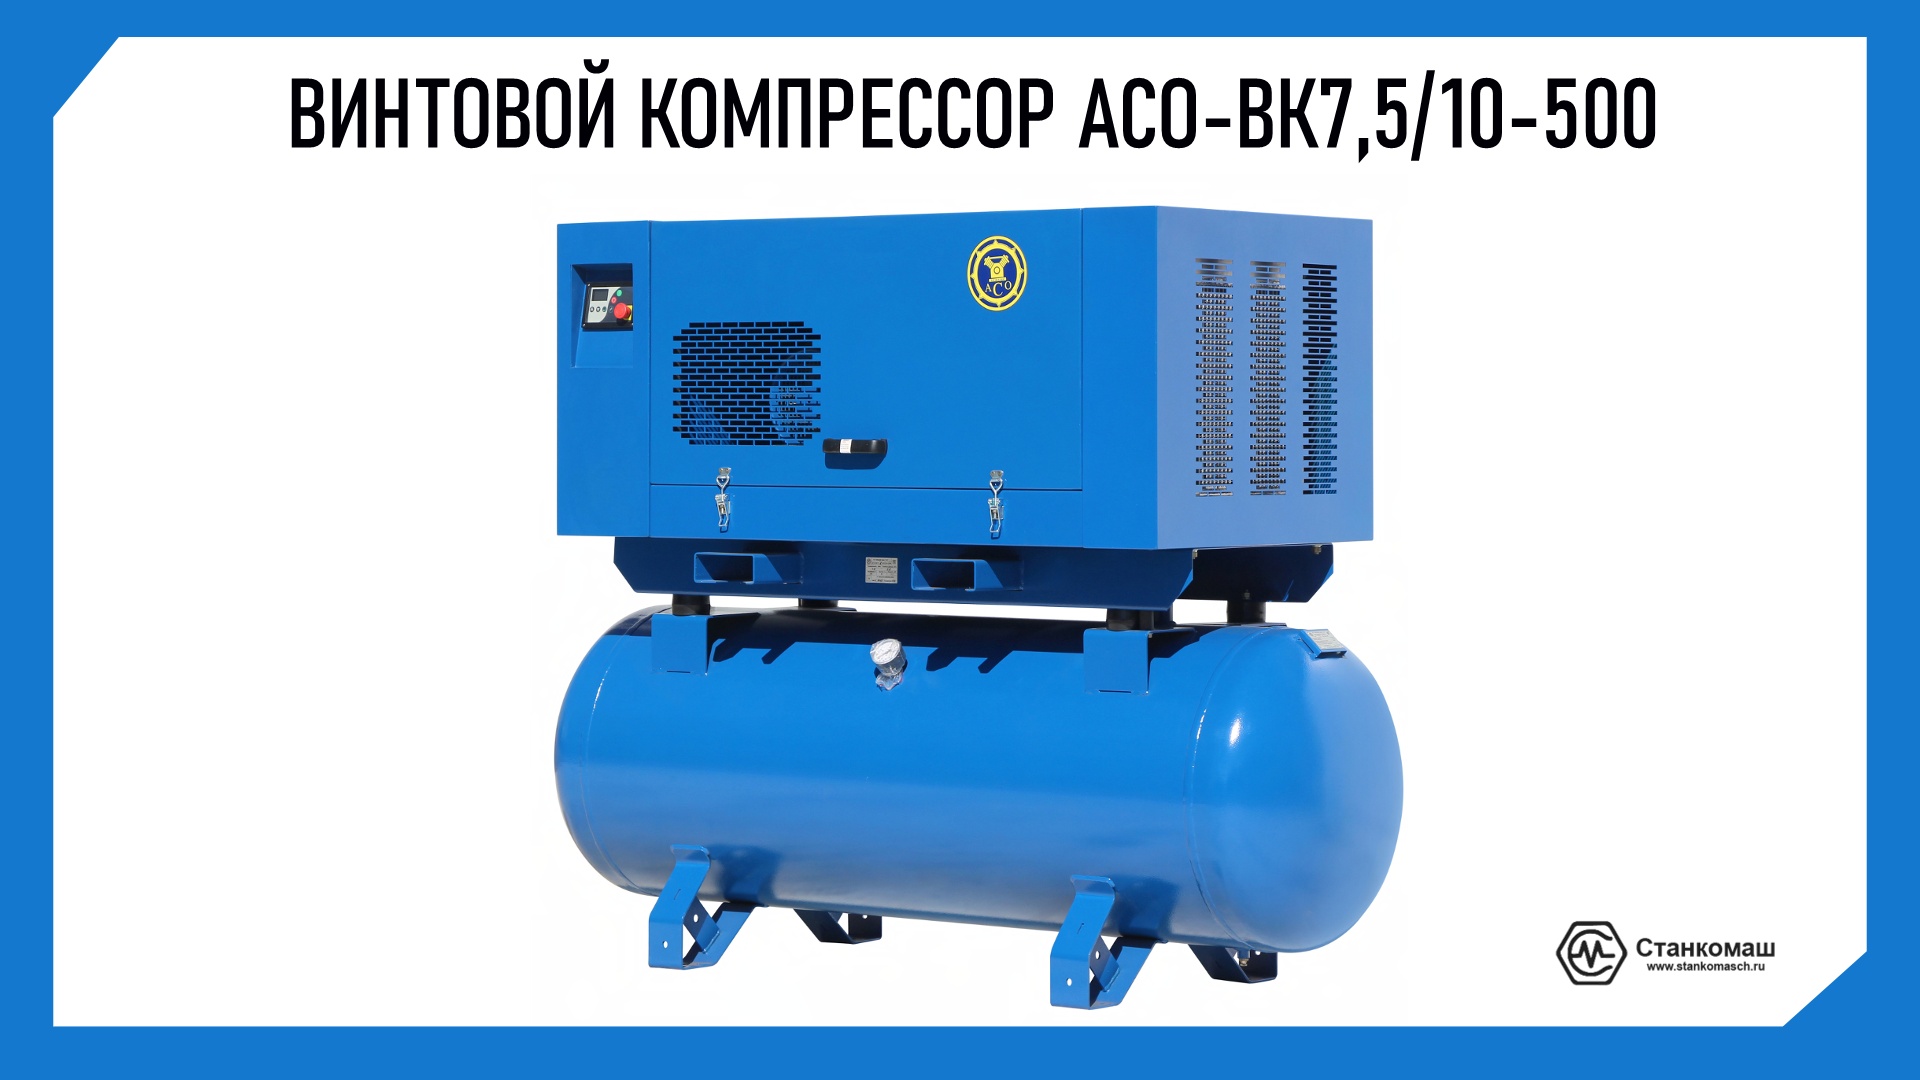 Винтовой компрессор АСО-ВК7,5/10-500. Купить в компании Станкомаш.